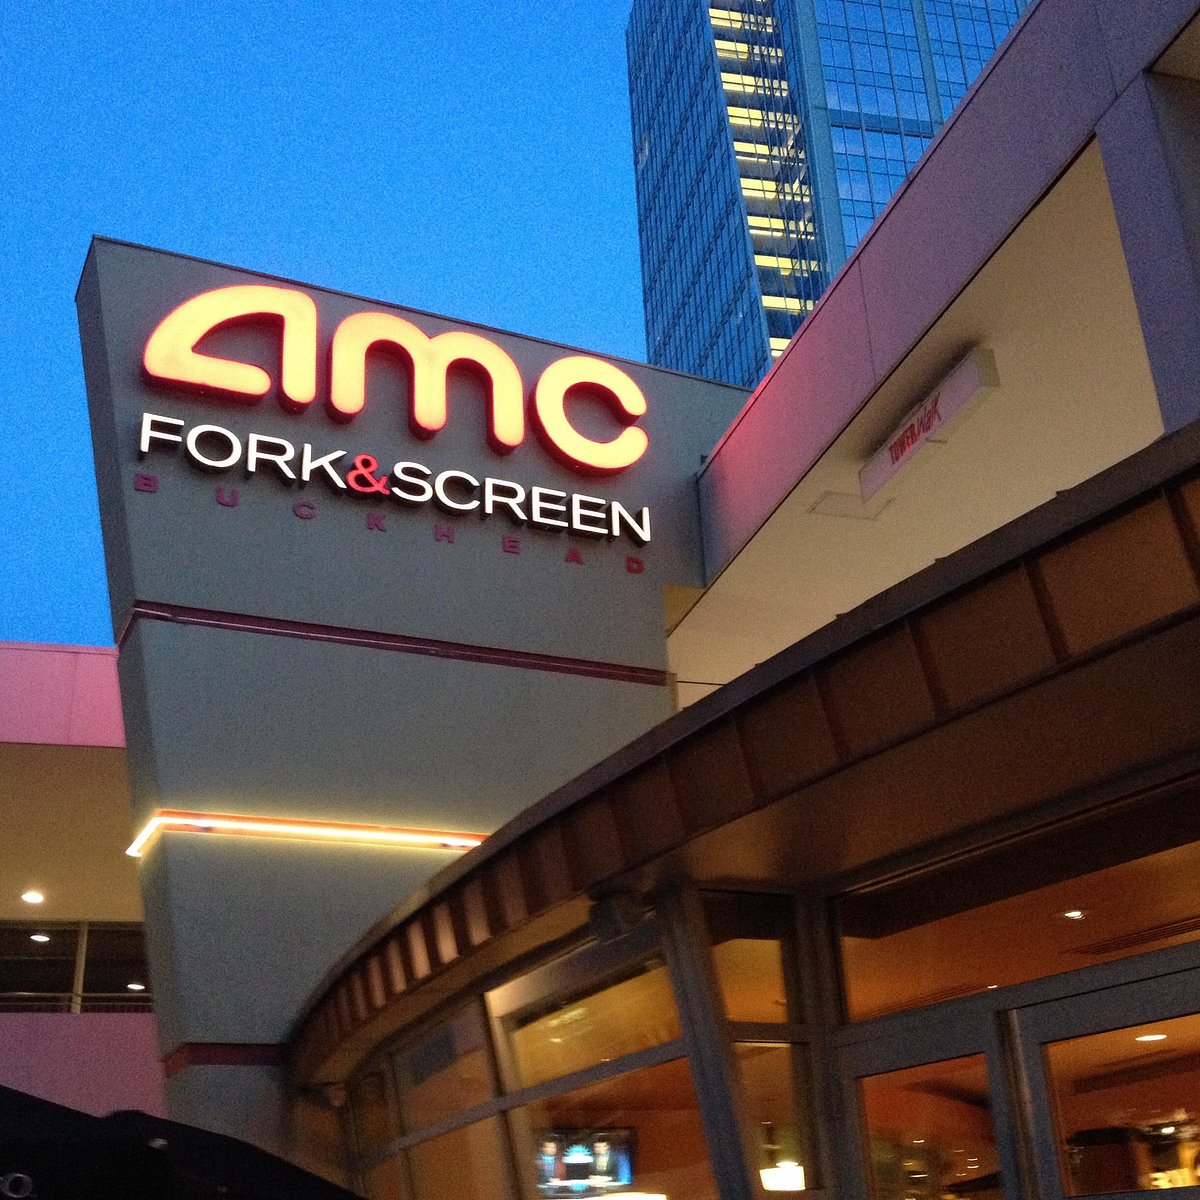 AMC Dine-In Theatres